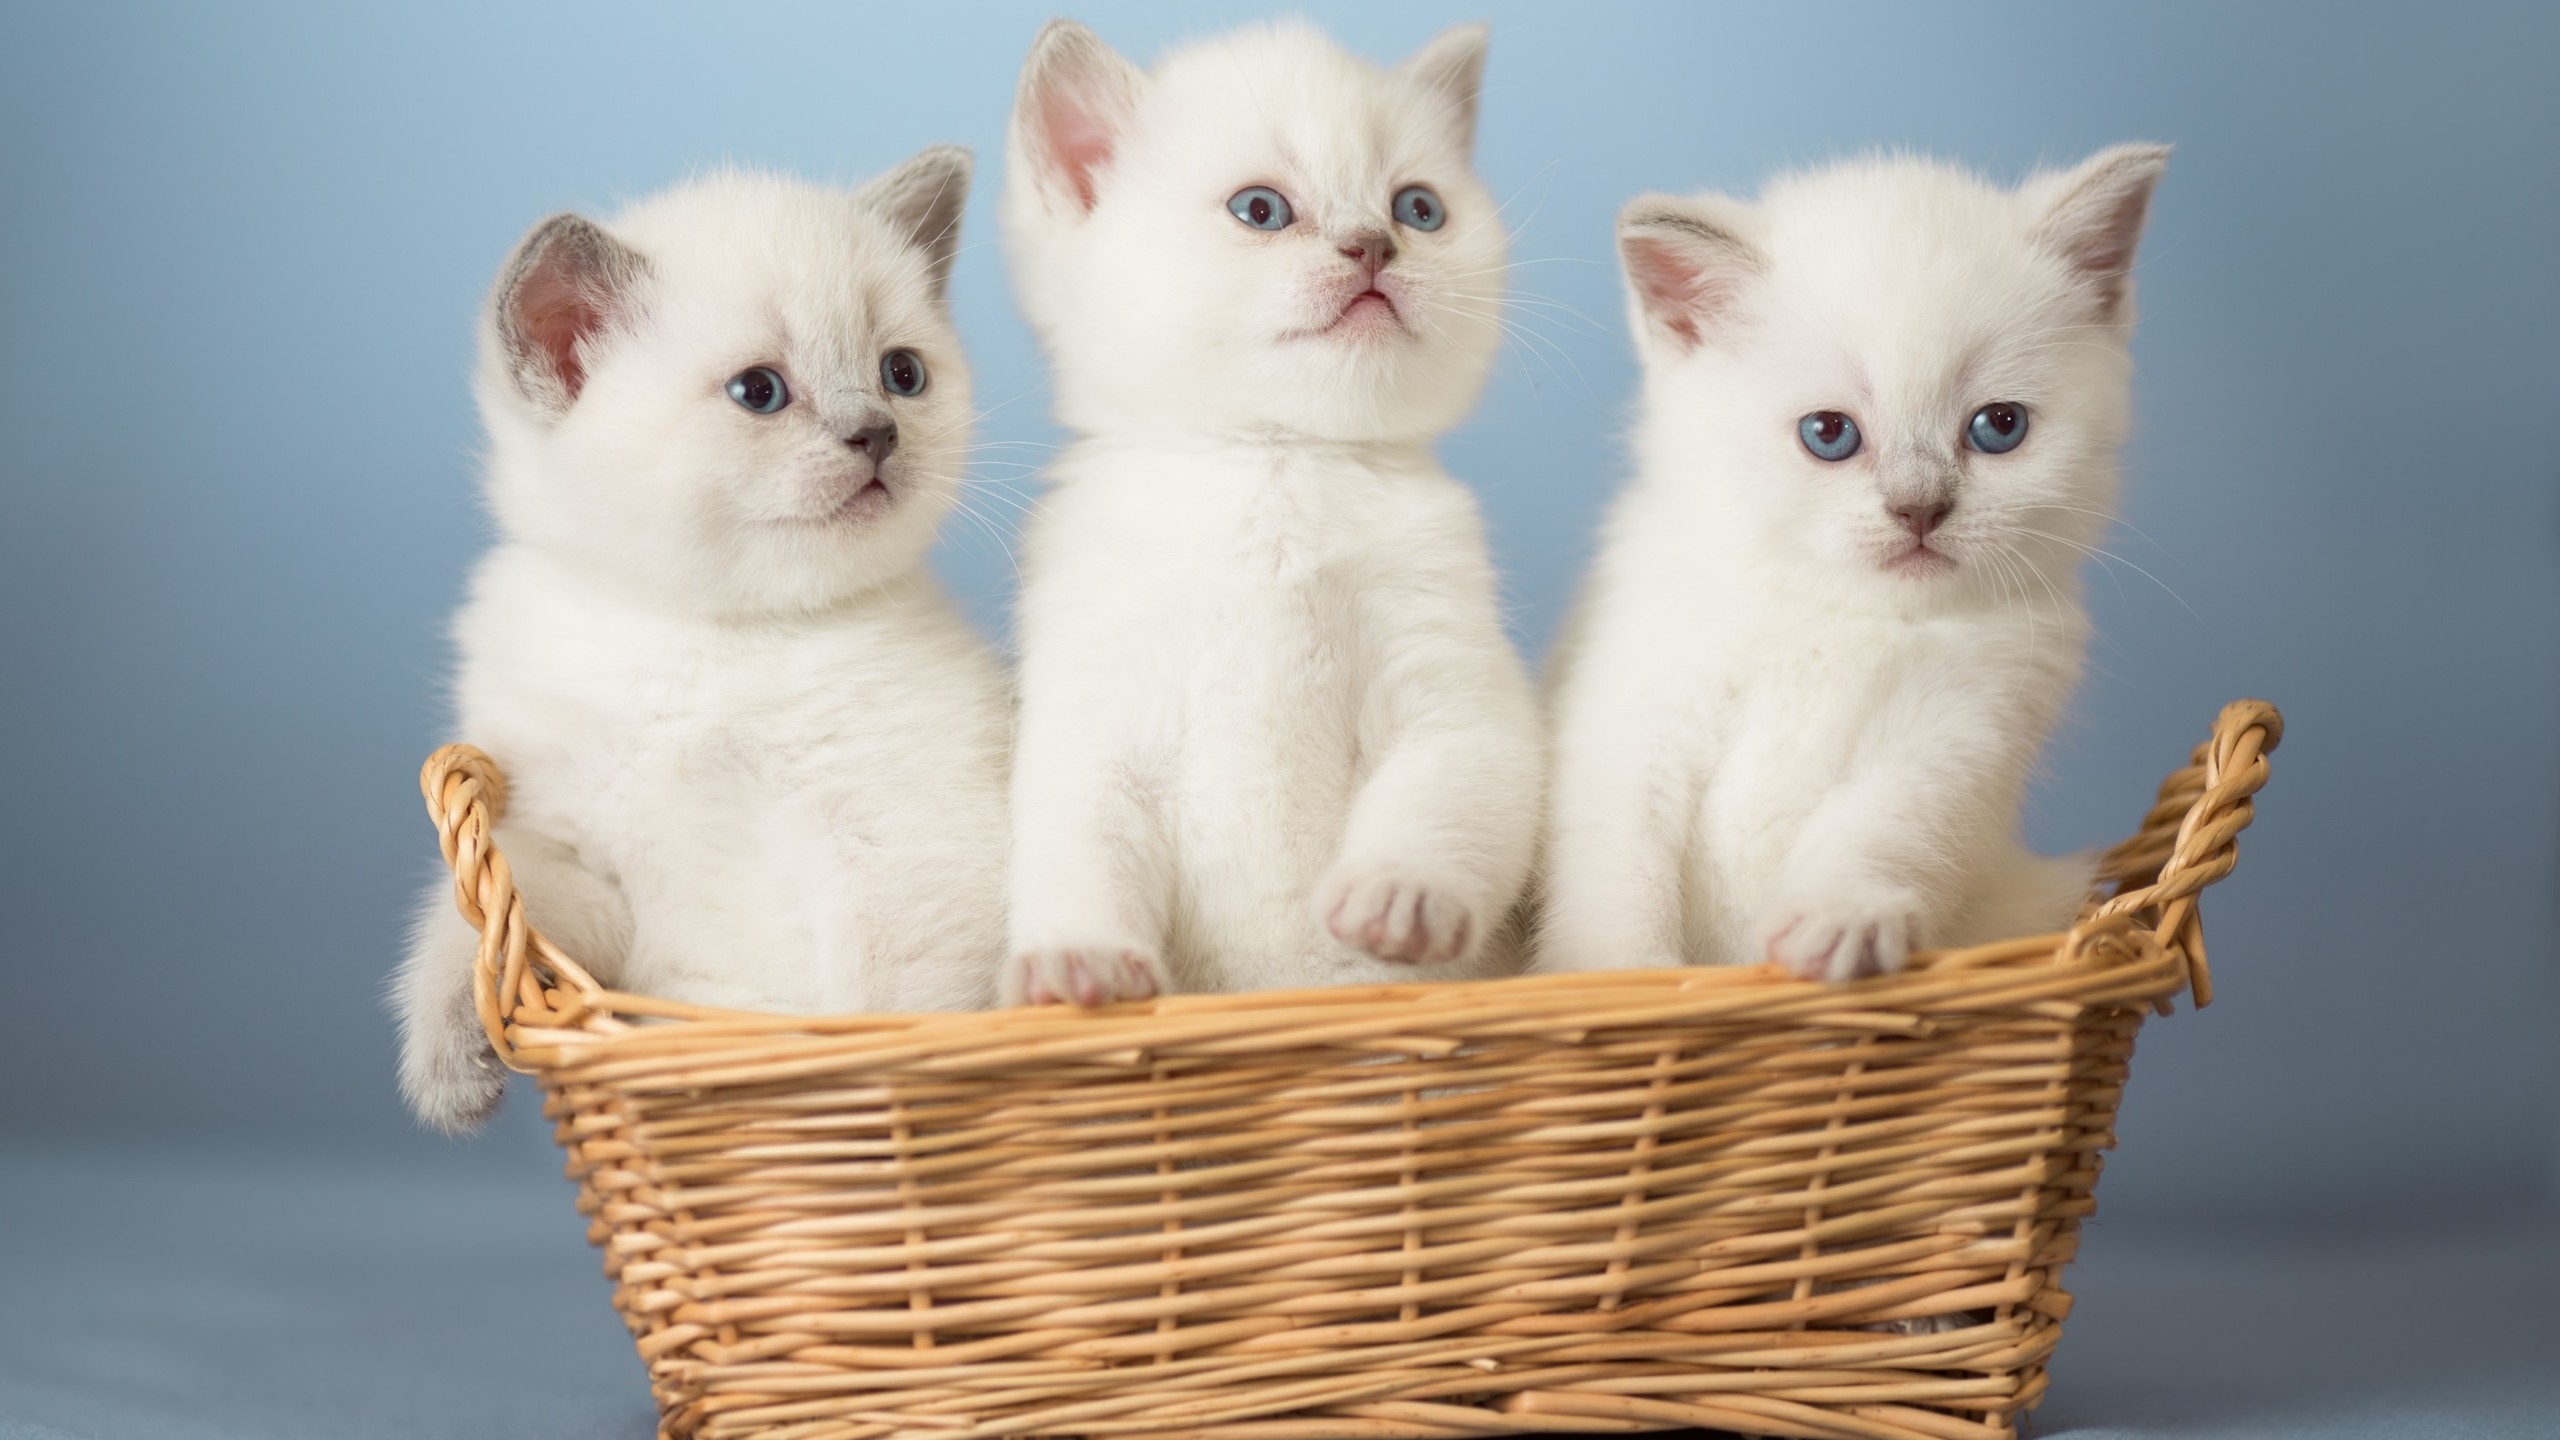 White Kittens for 2560x1440 HDTV resolution